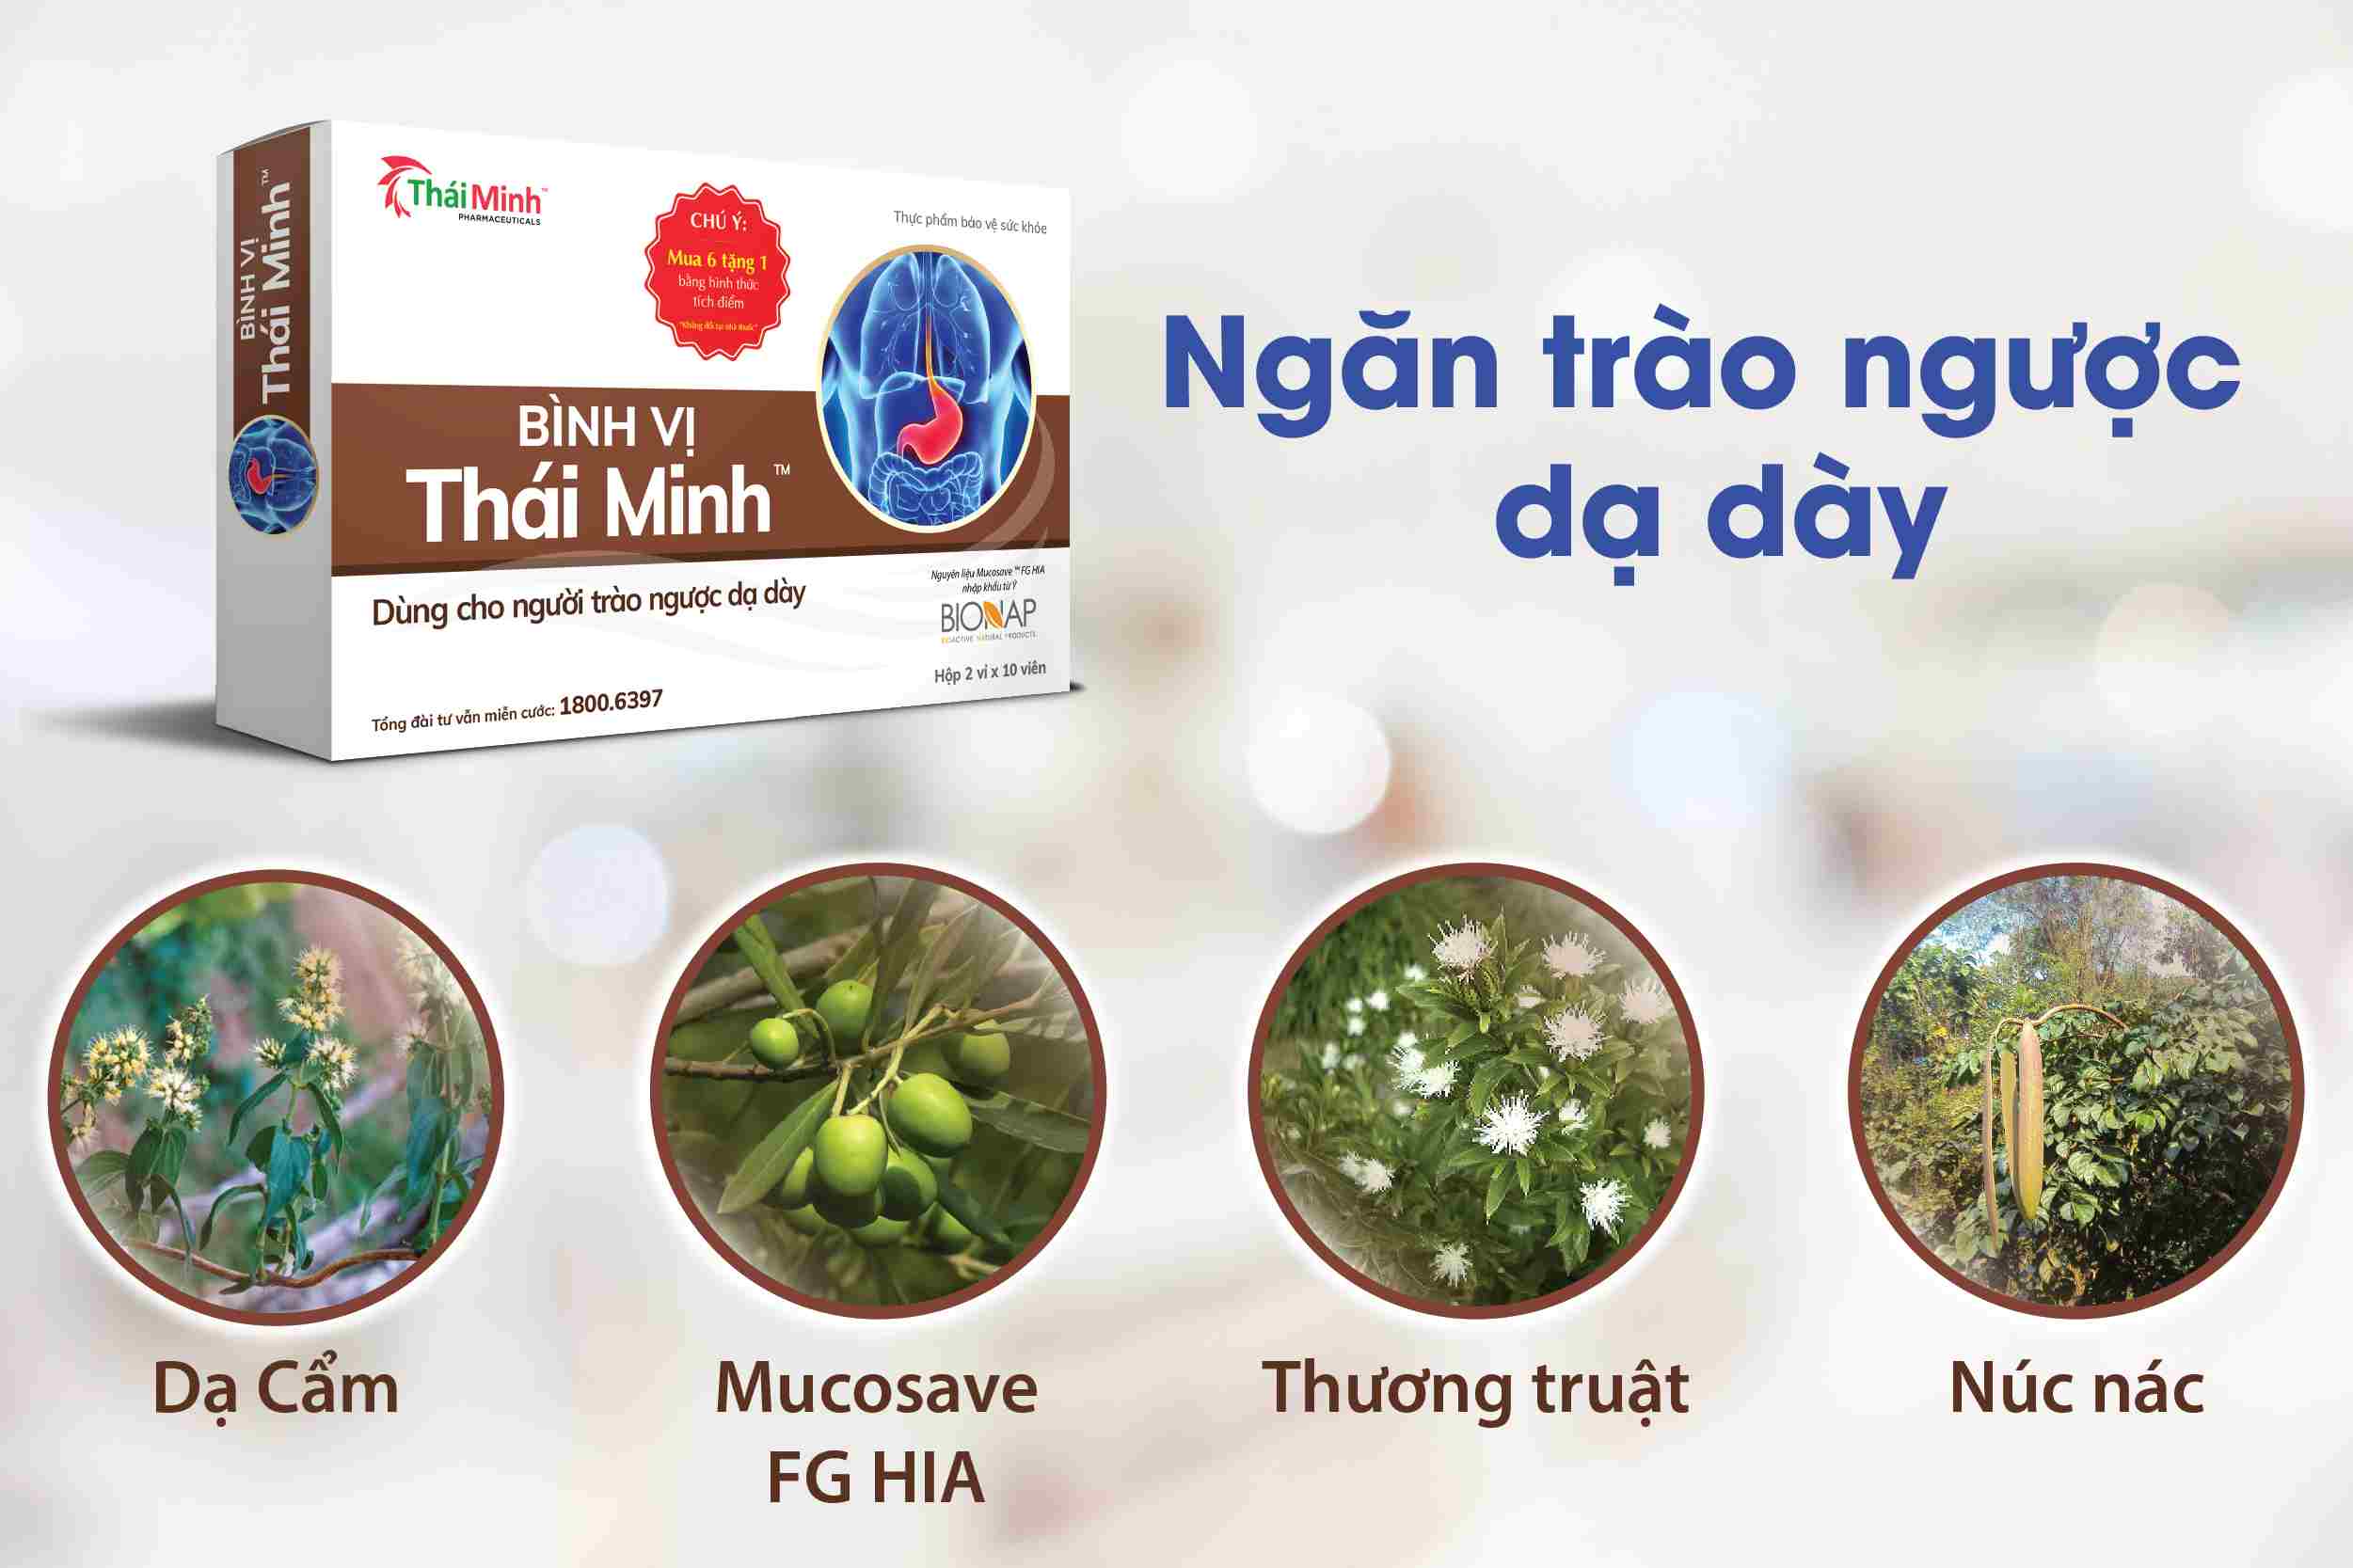 Bình Vị Thái Minh - Bảo vệ sức khỏe dạ dày của bạn 1